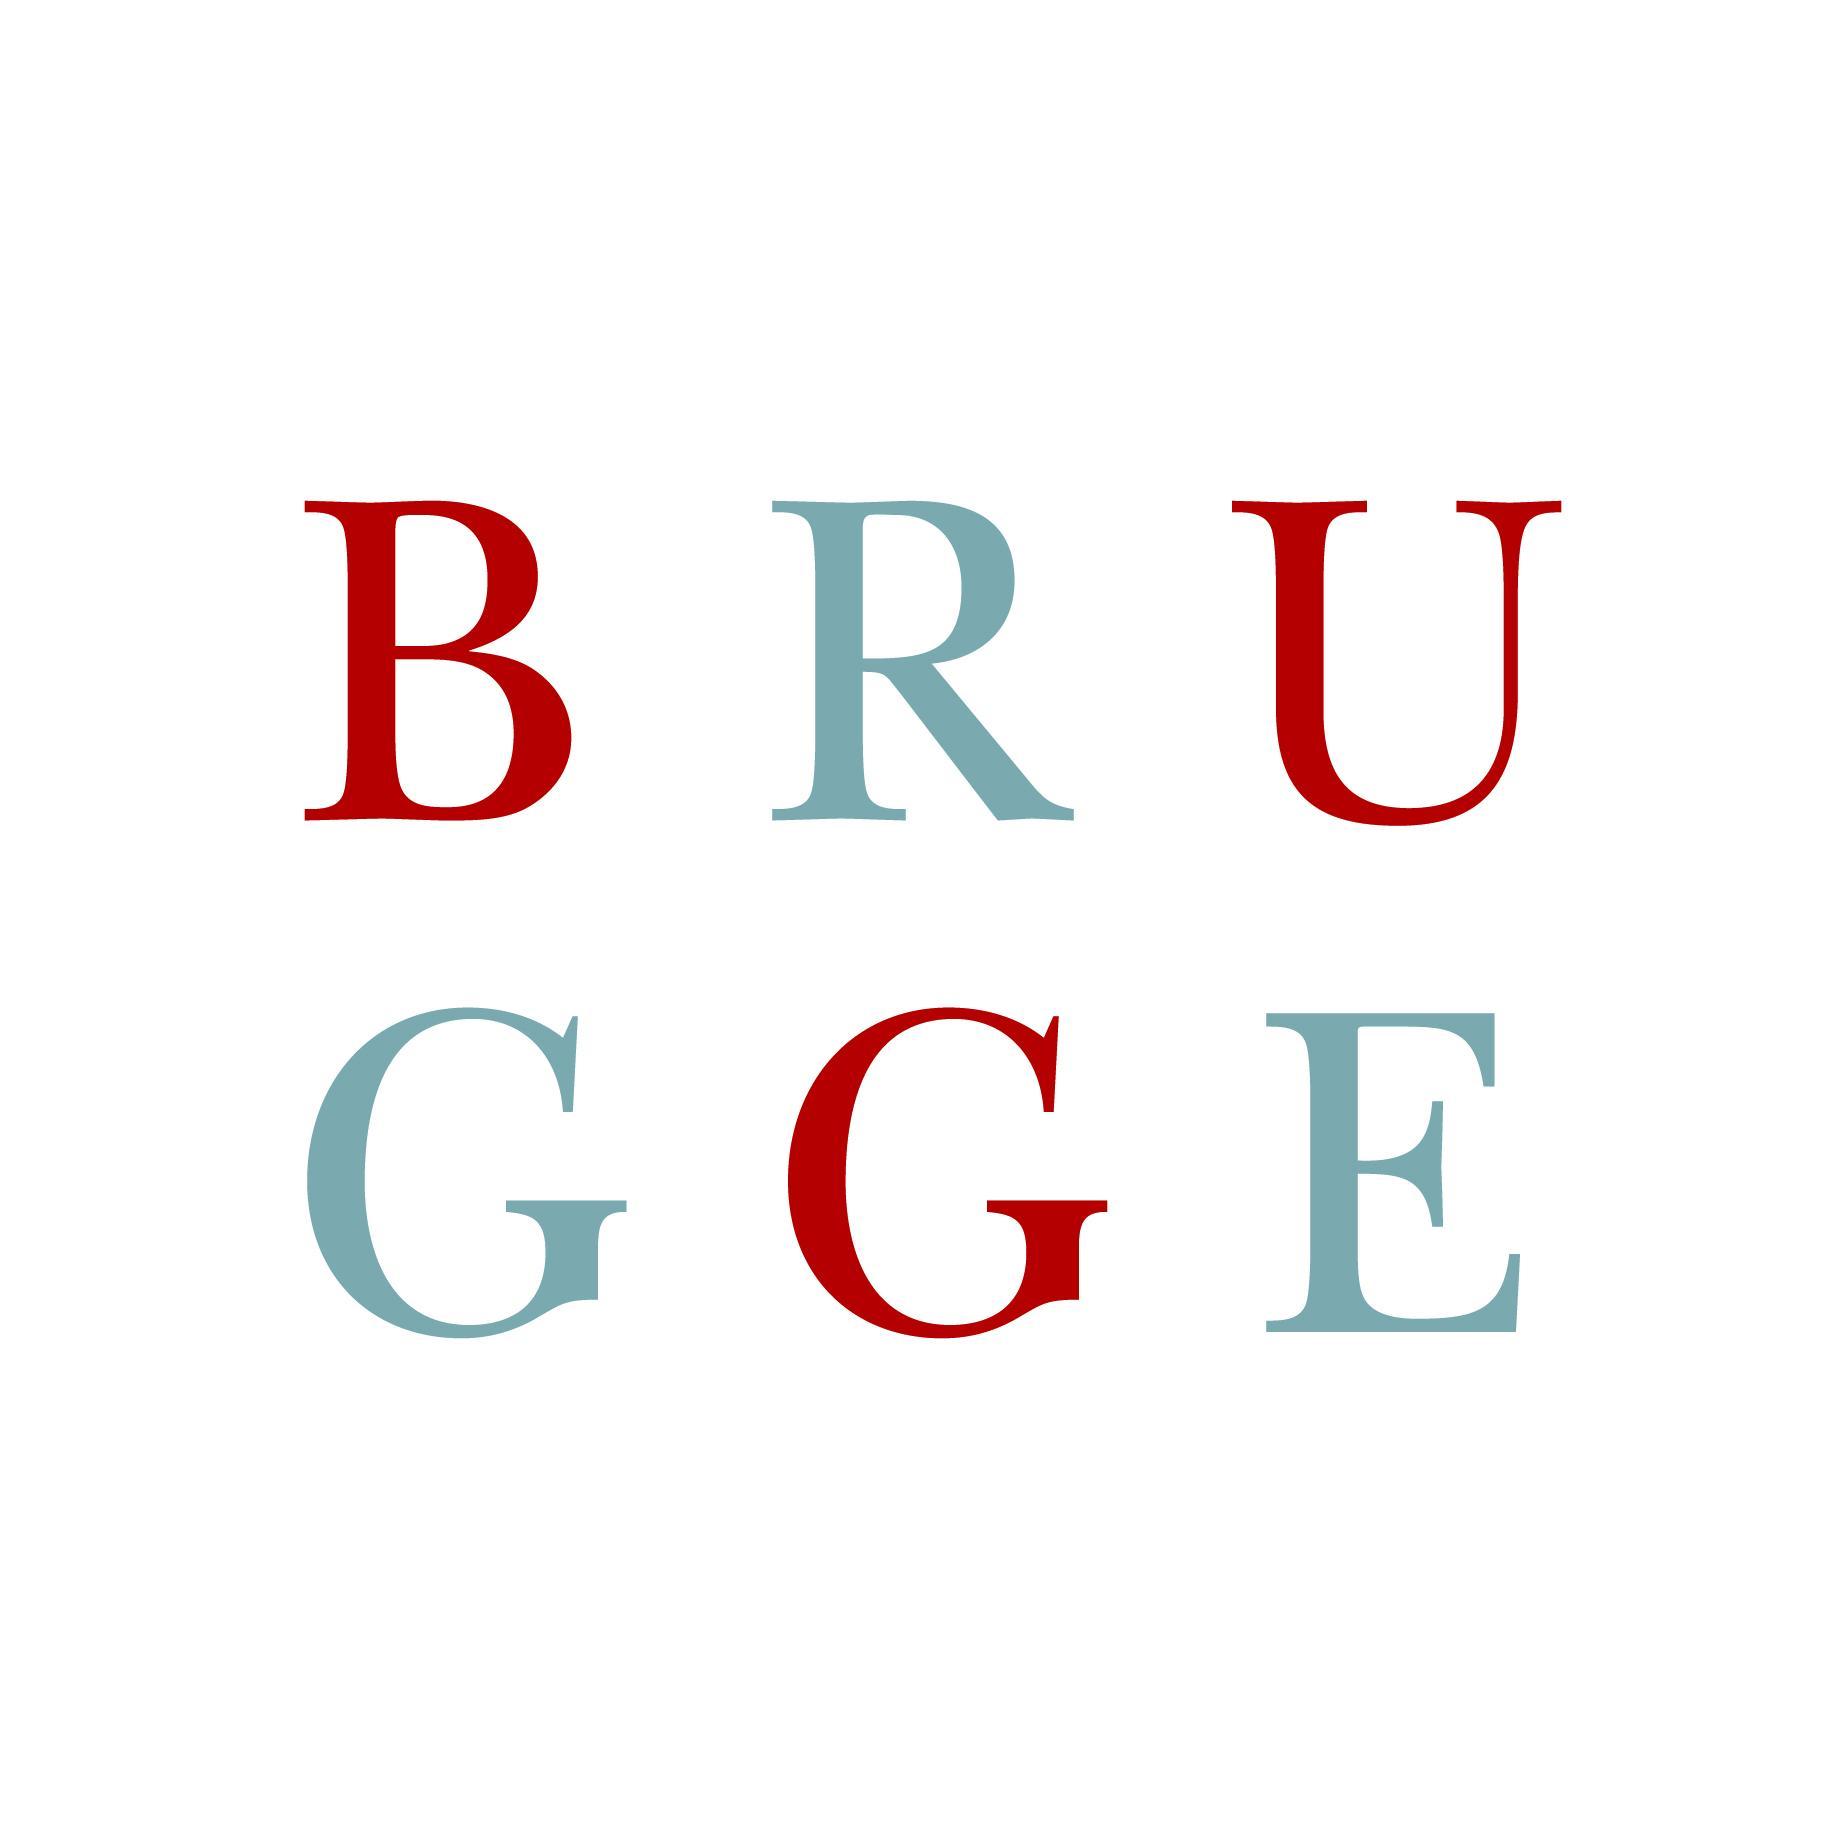 Officieel account van Sportdienst Brugge: evenementen, sportclubs, eigen organisaties, strandreddingsdienst, verhuur stedelijke sportinfrastructuur, ...